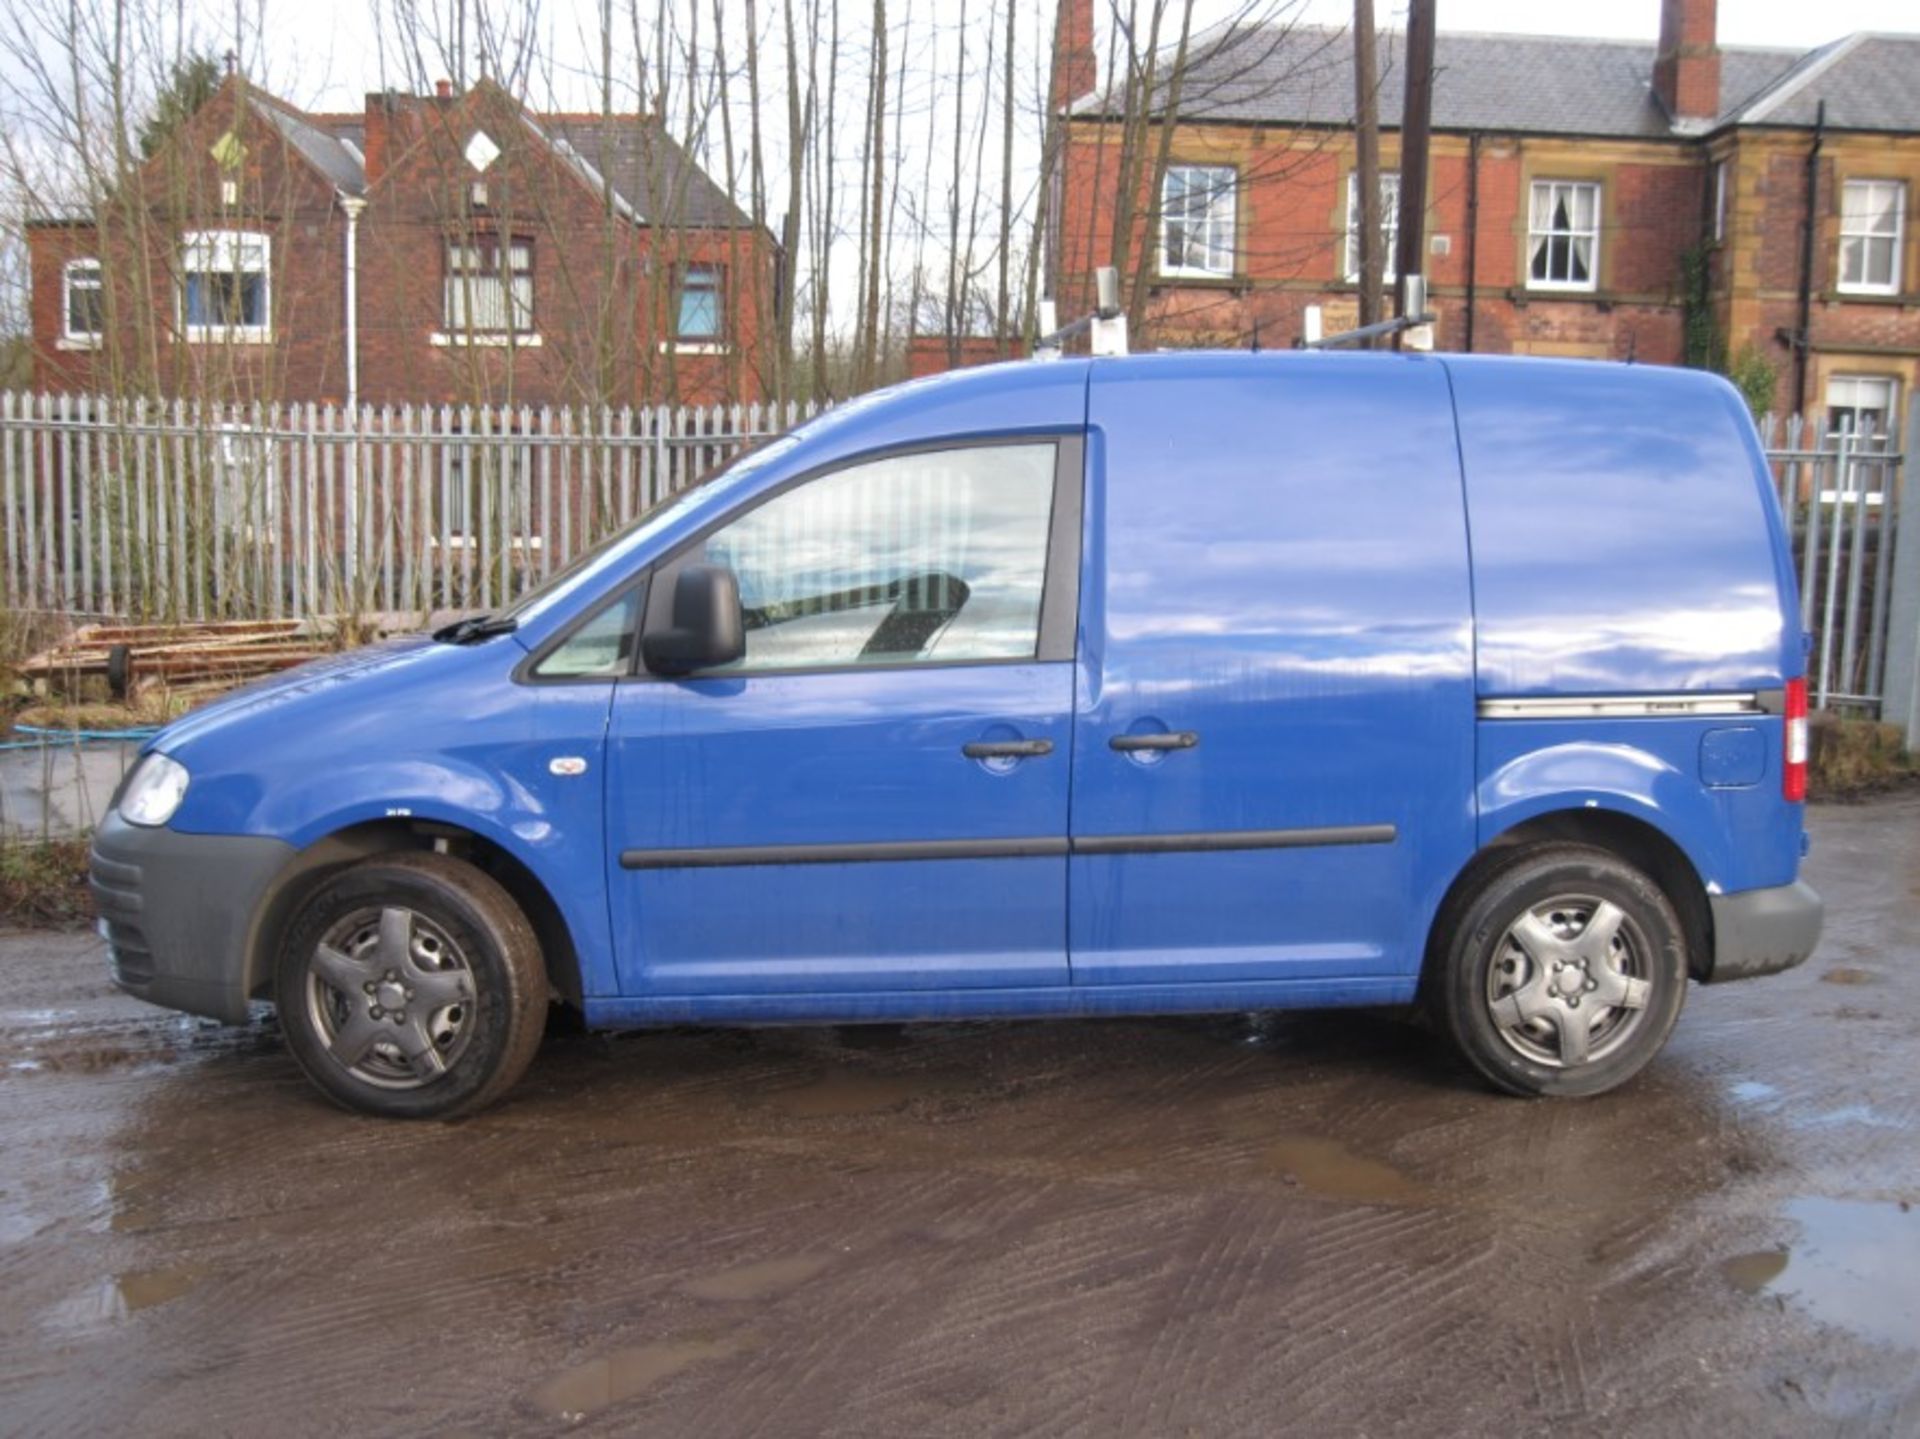 2009 Volkswagen Caddy Van - Image 2 of 3